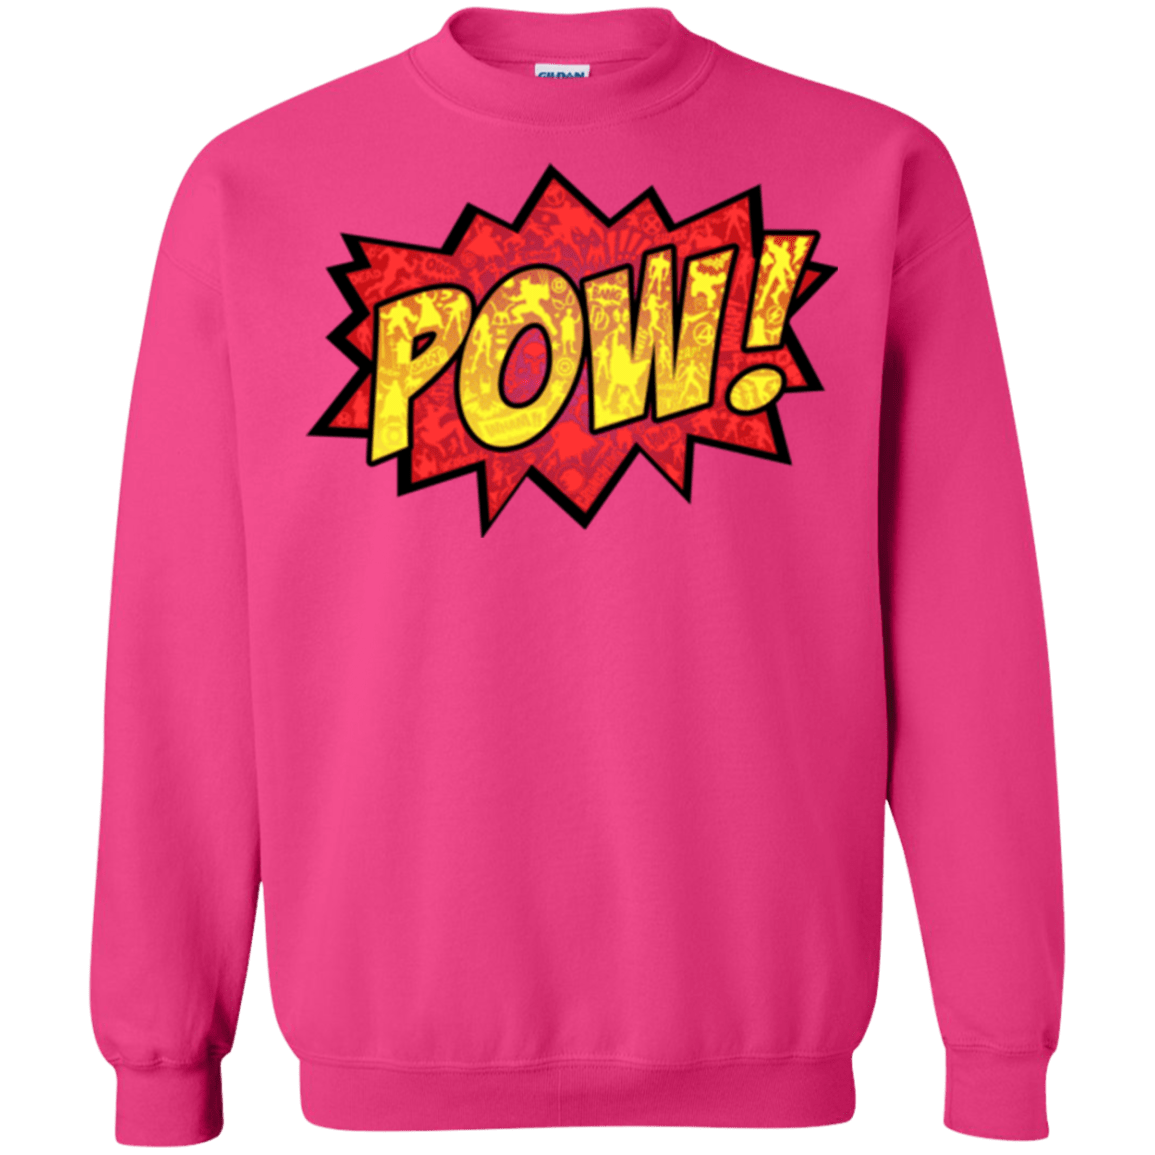 Sweatshirts Heliconia / Small pow Crewneck Sweatshirt